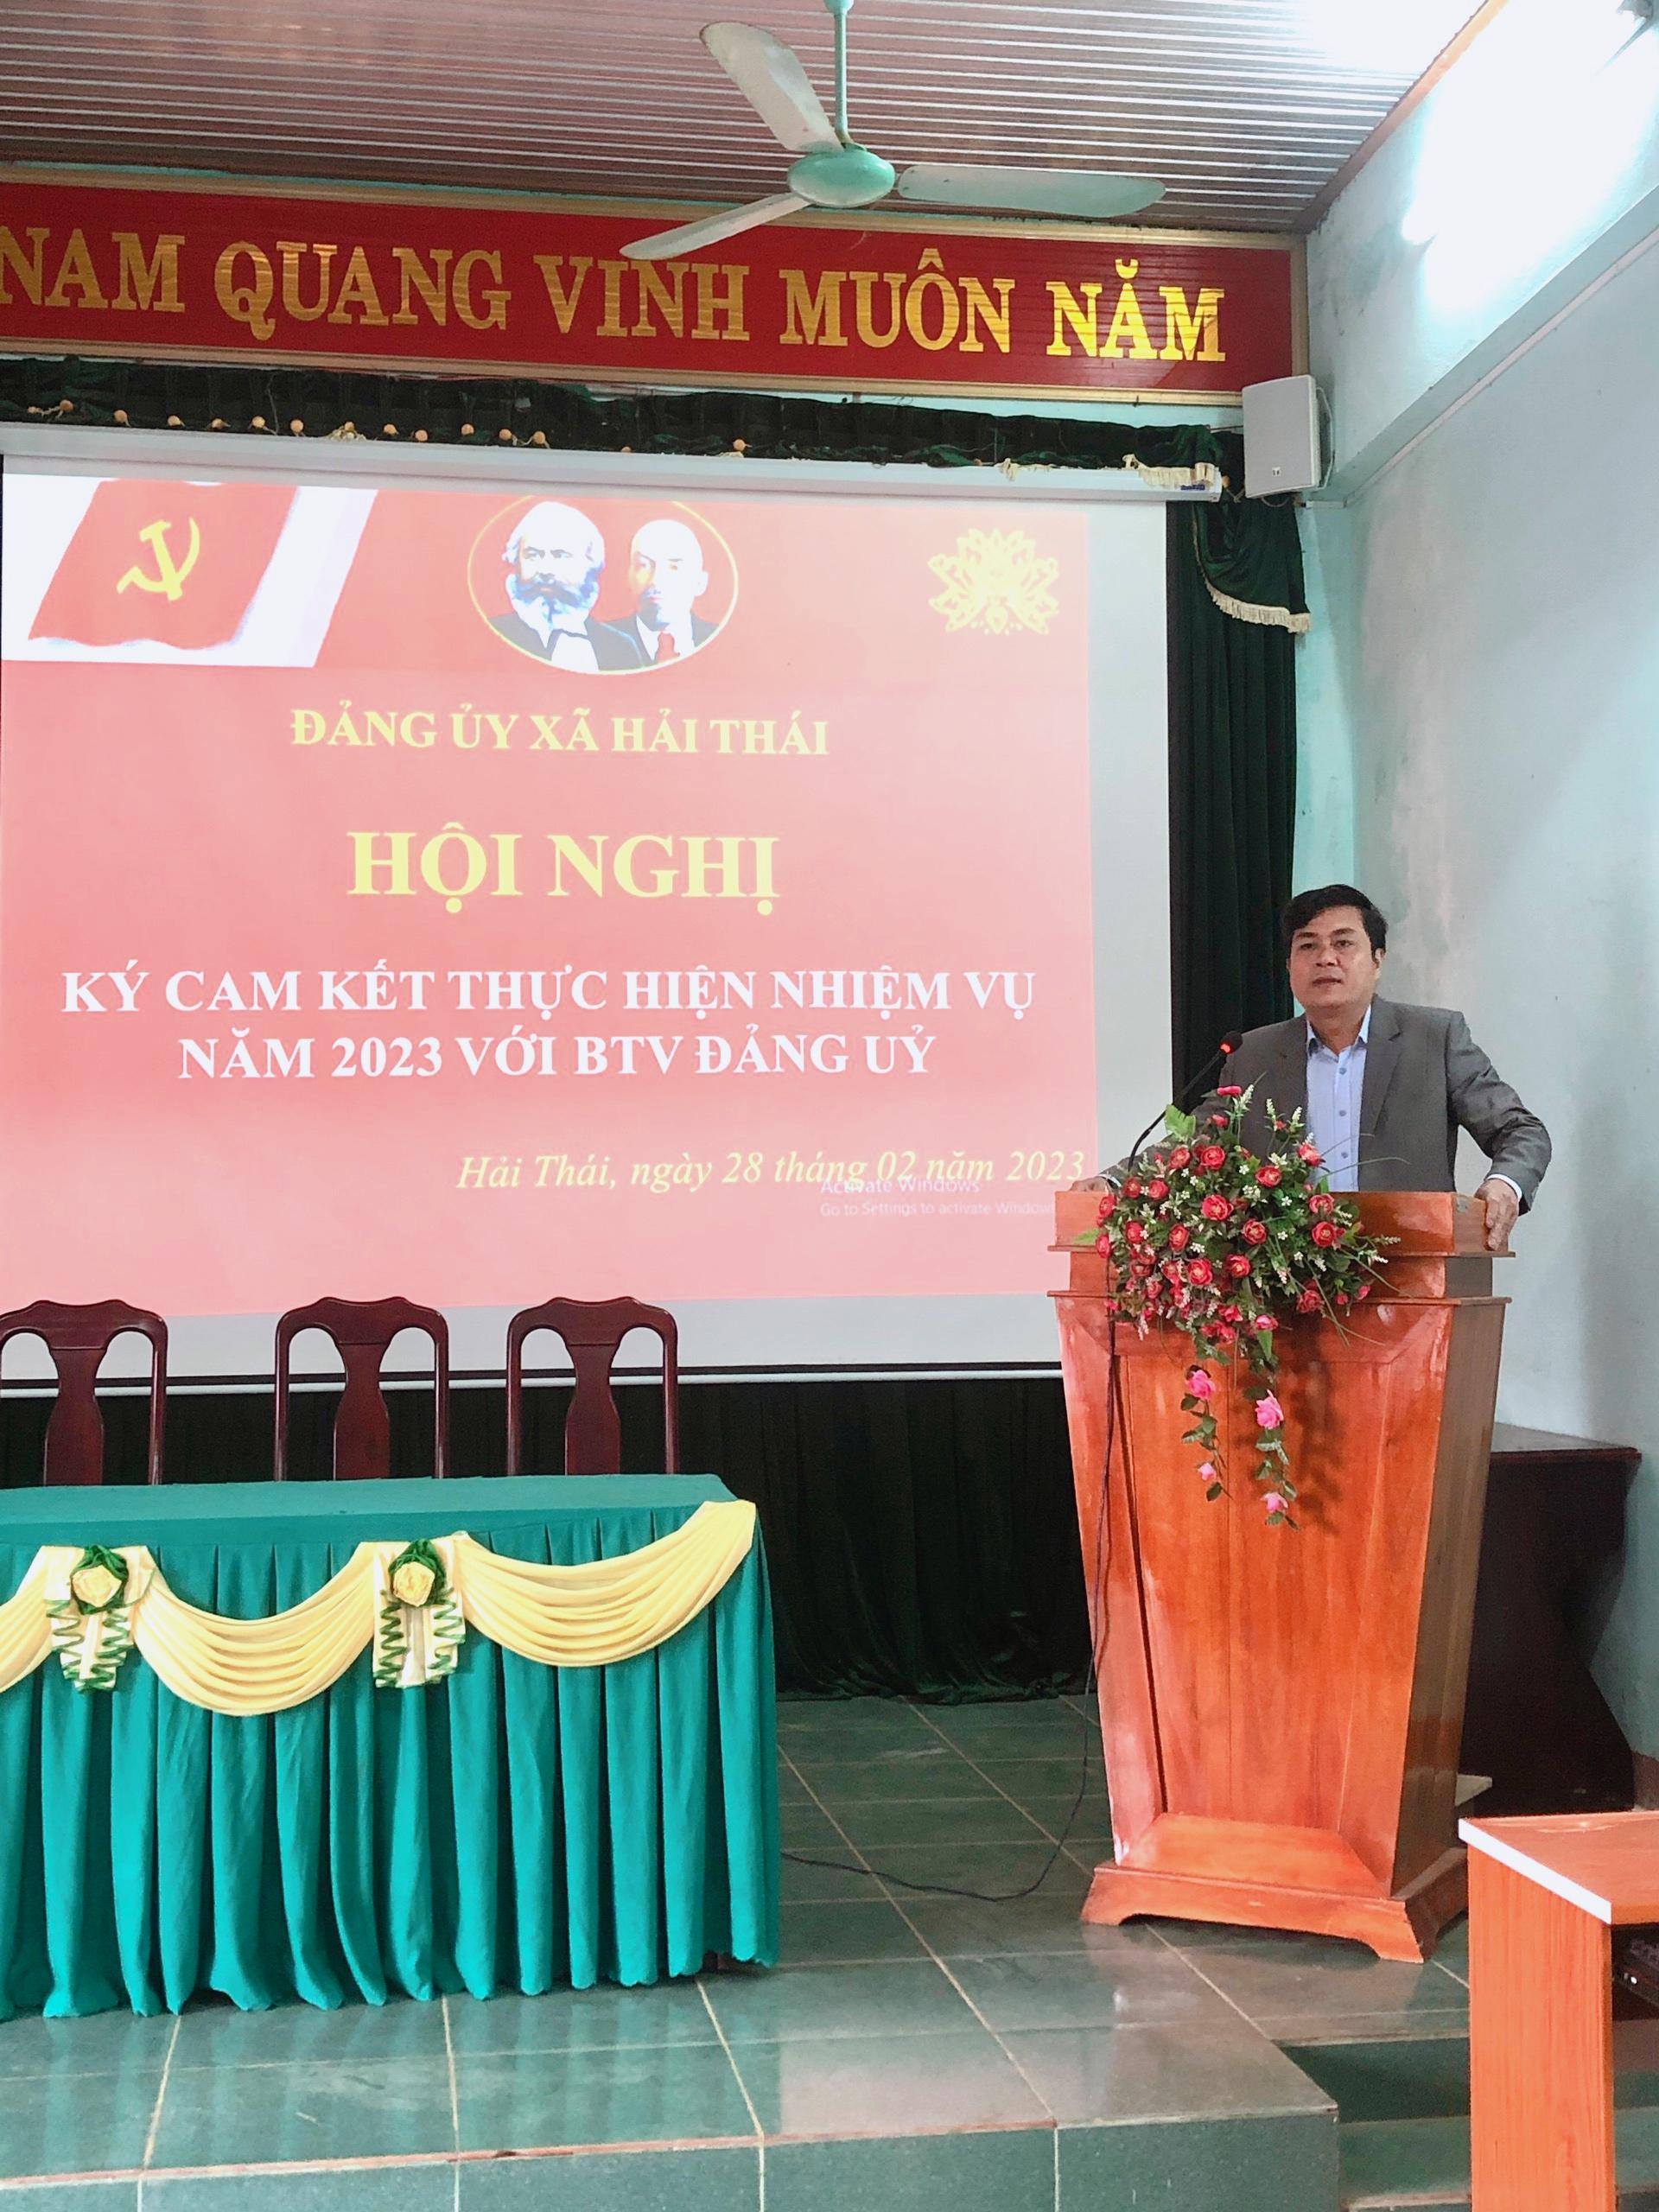 Đảng ủy xã Hải Thái tổ chức Hội nghị ký cam kết thực hiện nhiệm vụ năm 2023 với BTV Đảng ủy